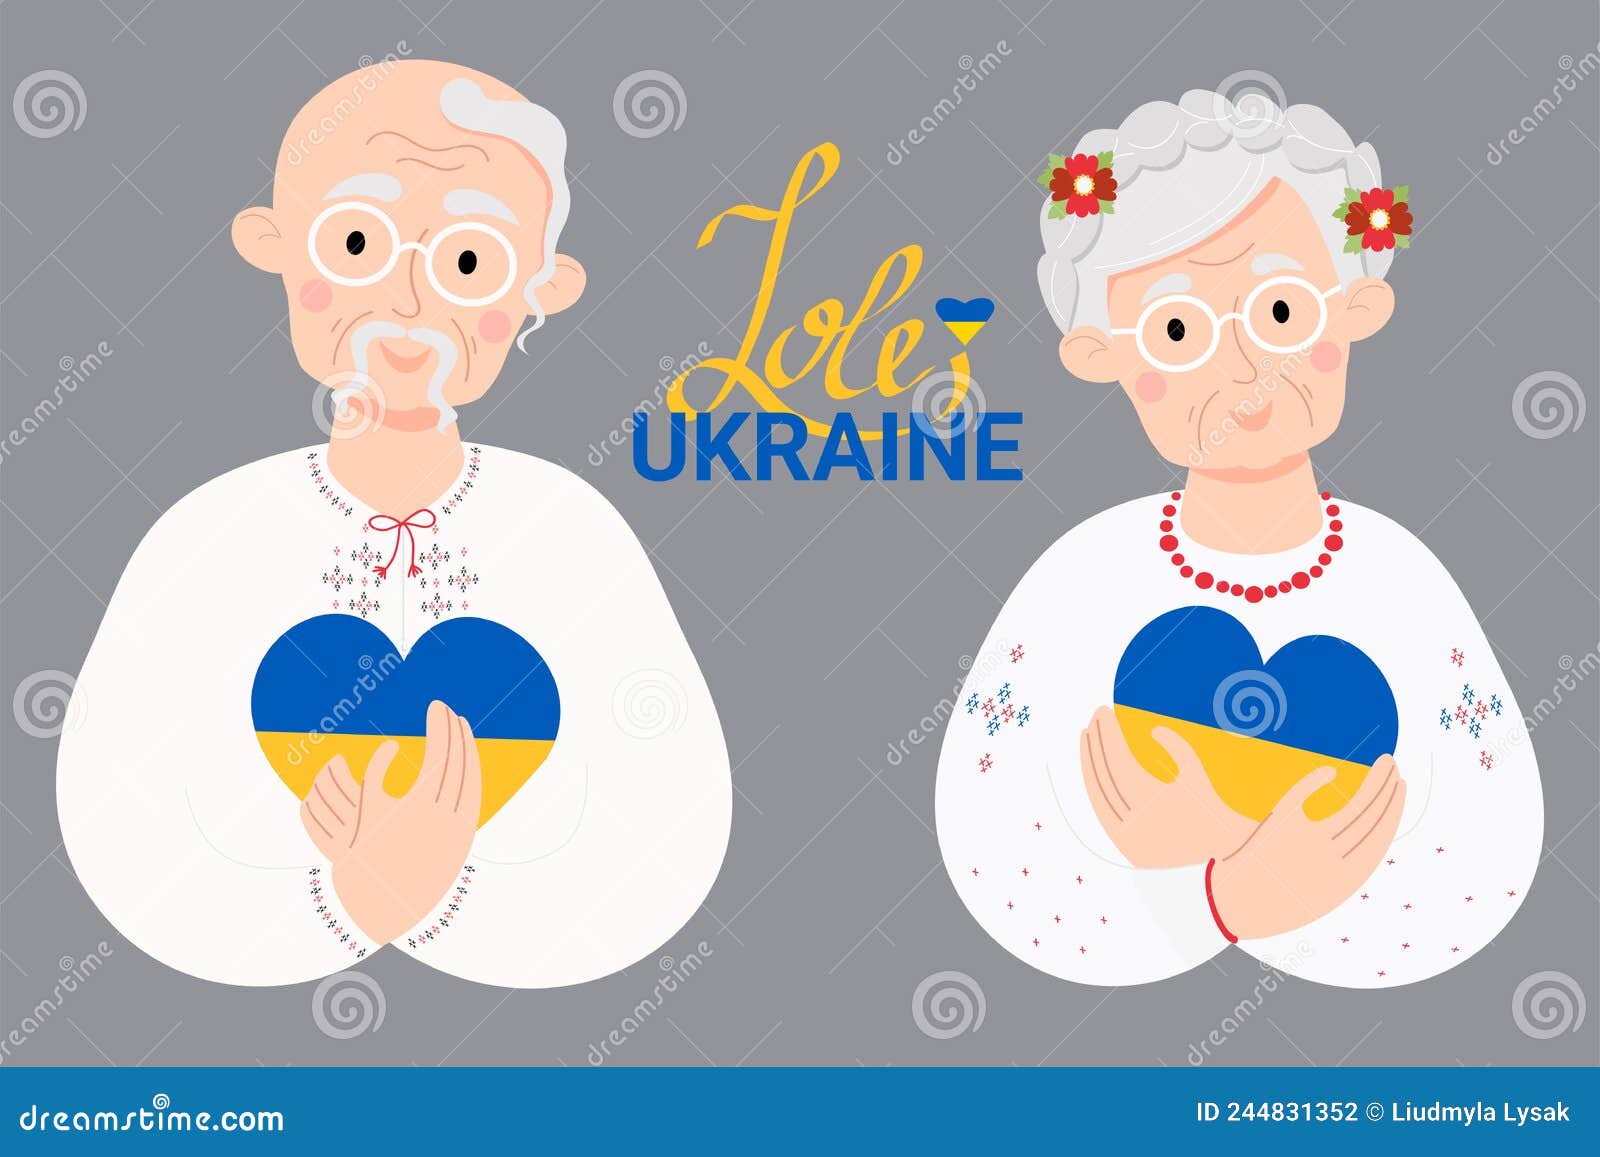 乌克兰，绍斯特卡 — 2019年11月30日：一位穿外套、披肩、戴棍子的老妇人正沿着城市街道走 编辑类库存图片 - 图片 包括有 退休人员 ...